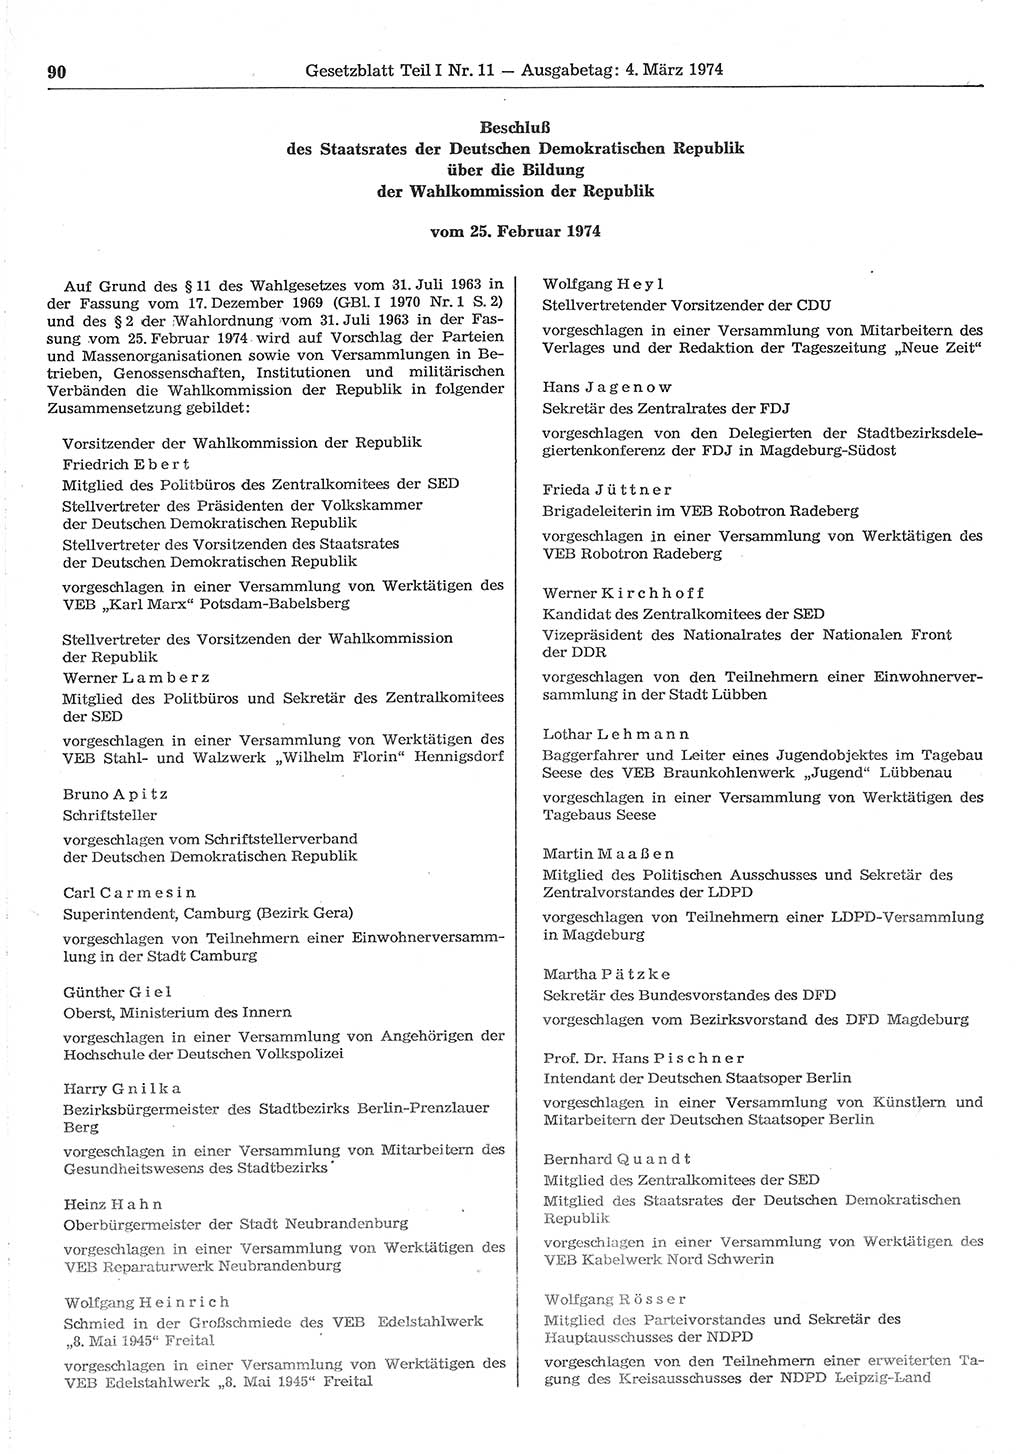 Gesetzblatt (GBl.) der Deutschen Demokratischen Republik (DDR) Teil Ⅰ 1974, Seite 90 (GBl. DDR Ⅰ 1974, S. 90)